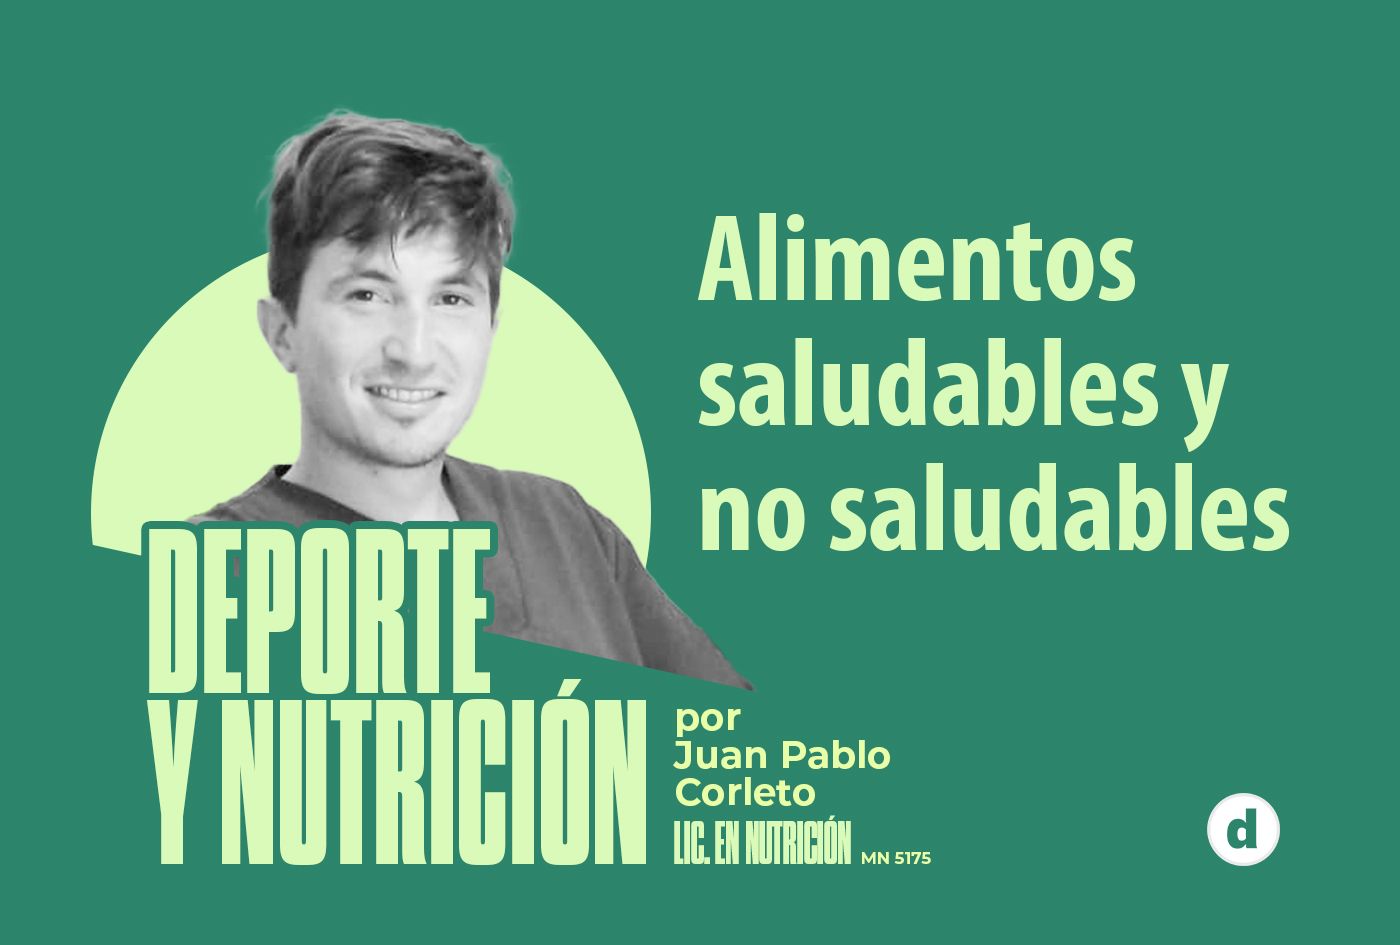 La columna del nutricionista Juan Pablo Corleto: “Alimentos saludables y no saludables”